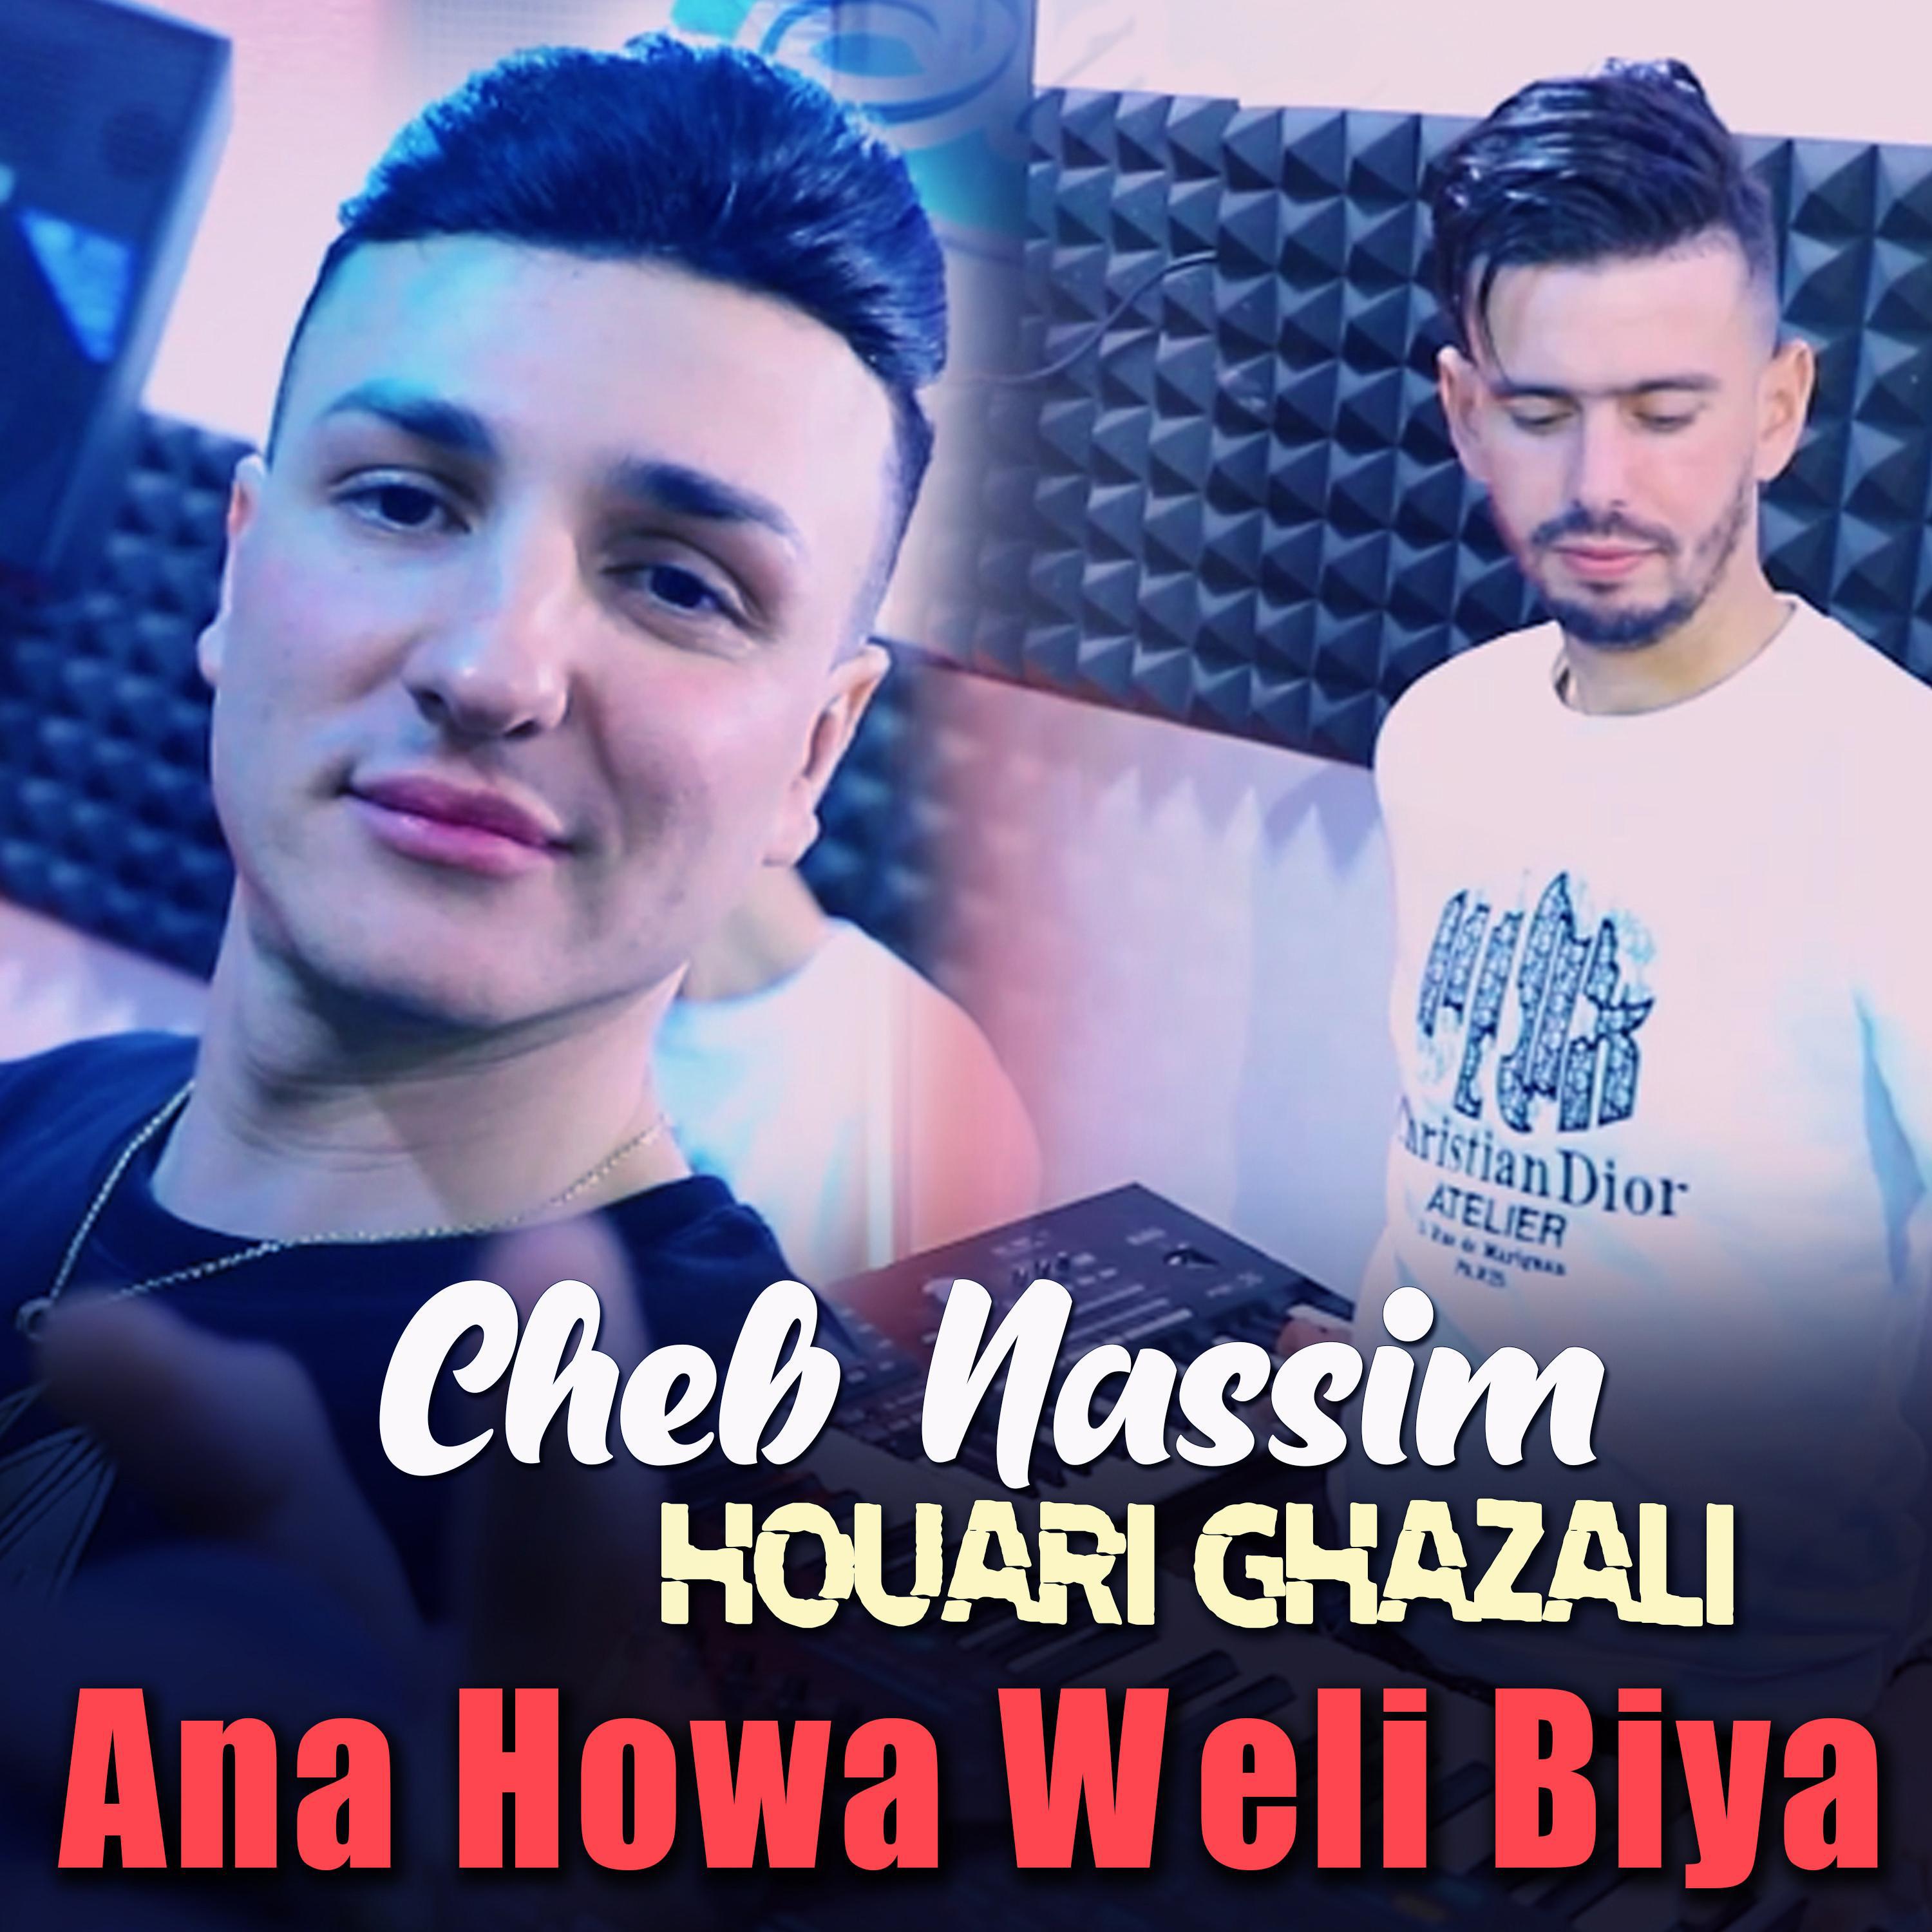 Edition Babylone - Cheb Nassim Ana Howa Weli Biya